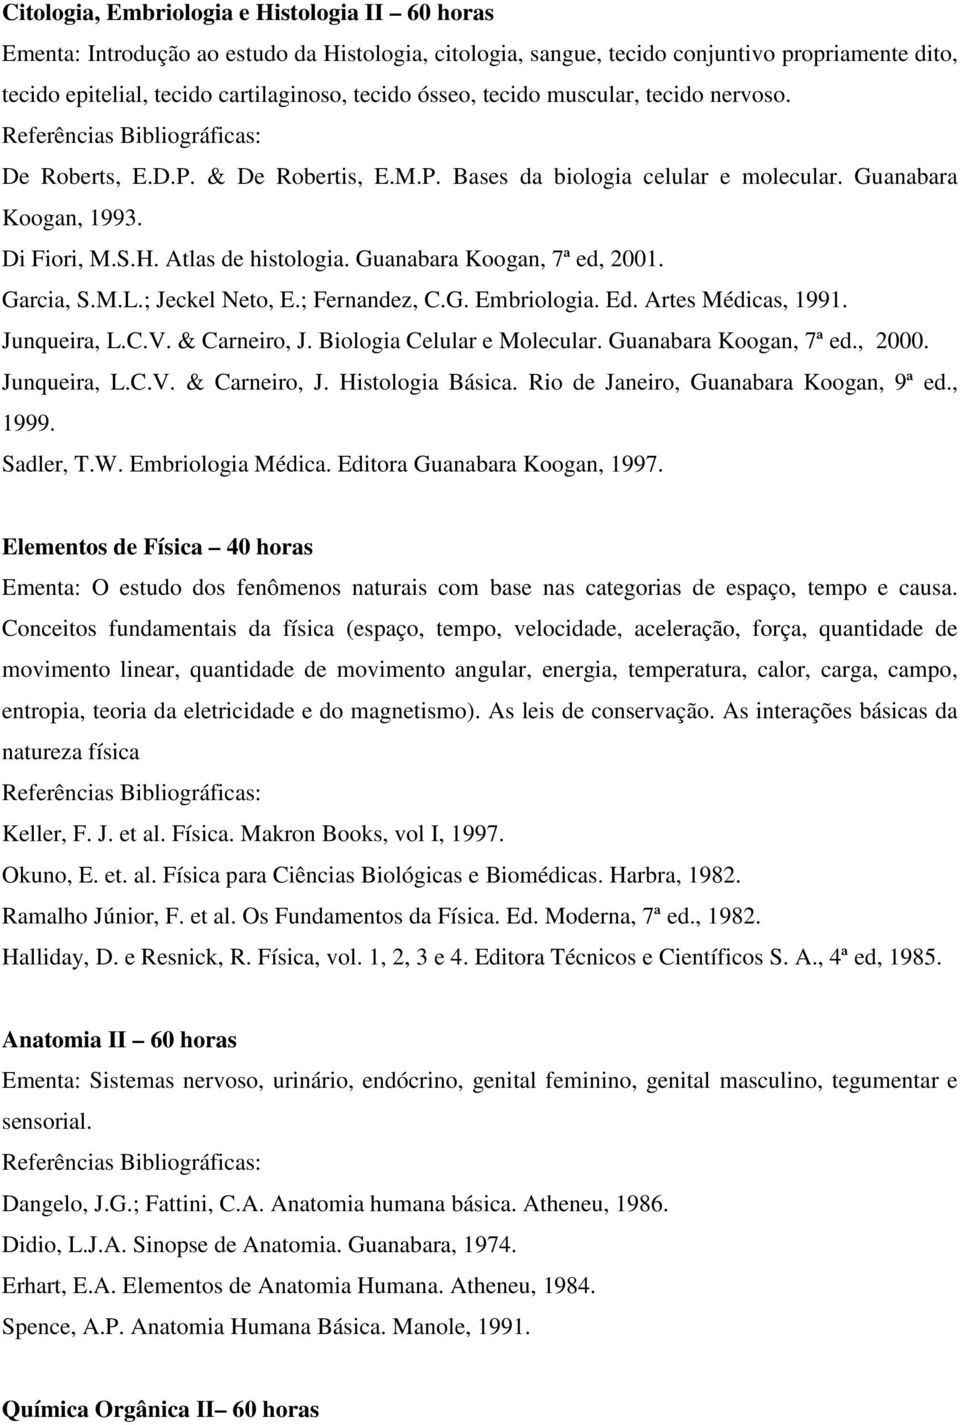 Guanabara Koogan, 7ª ed, 2001. Garcia, S.M.L.; Jeckel Neto, E.; Fernandez, C.G. Embriologia. Ed. Artes Médicas, 1991. Junqueira, L.C.V. & Carneiro, J. Biologia Celular e Molecular.